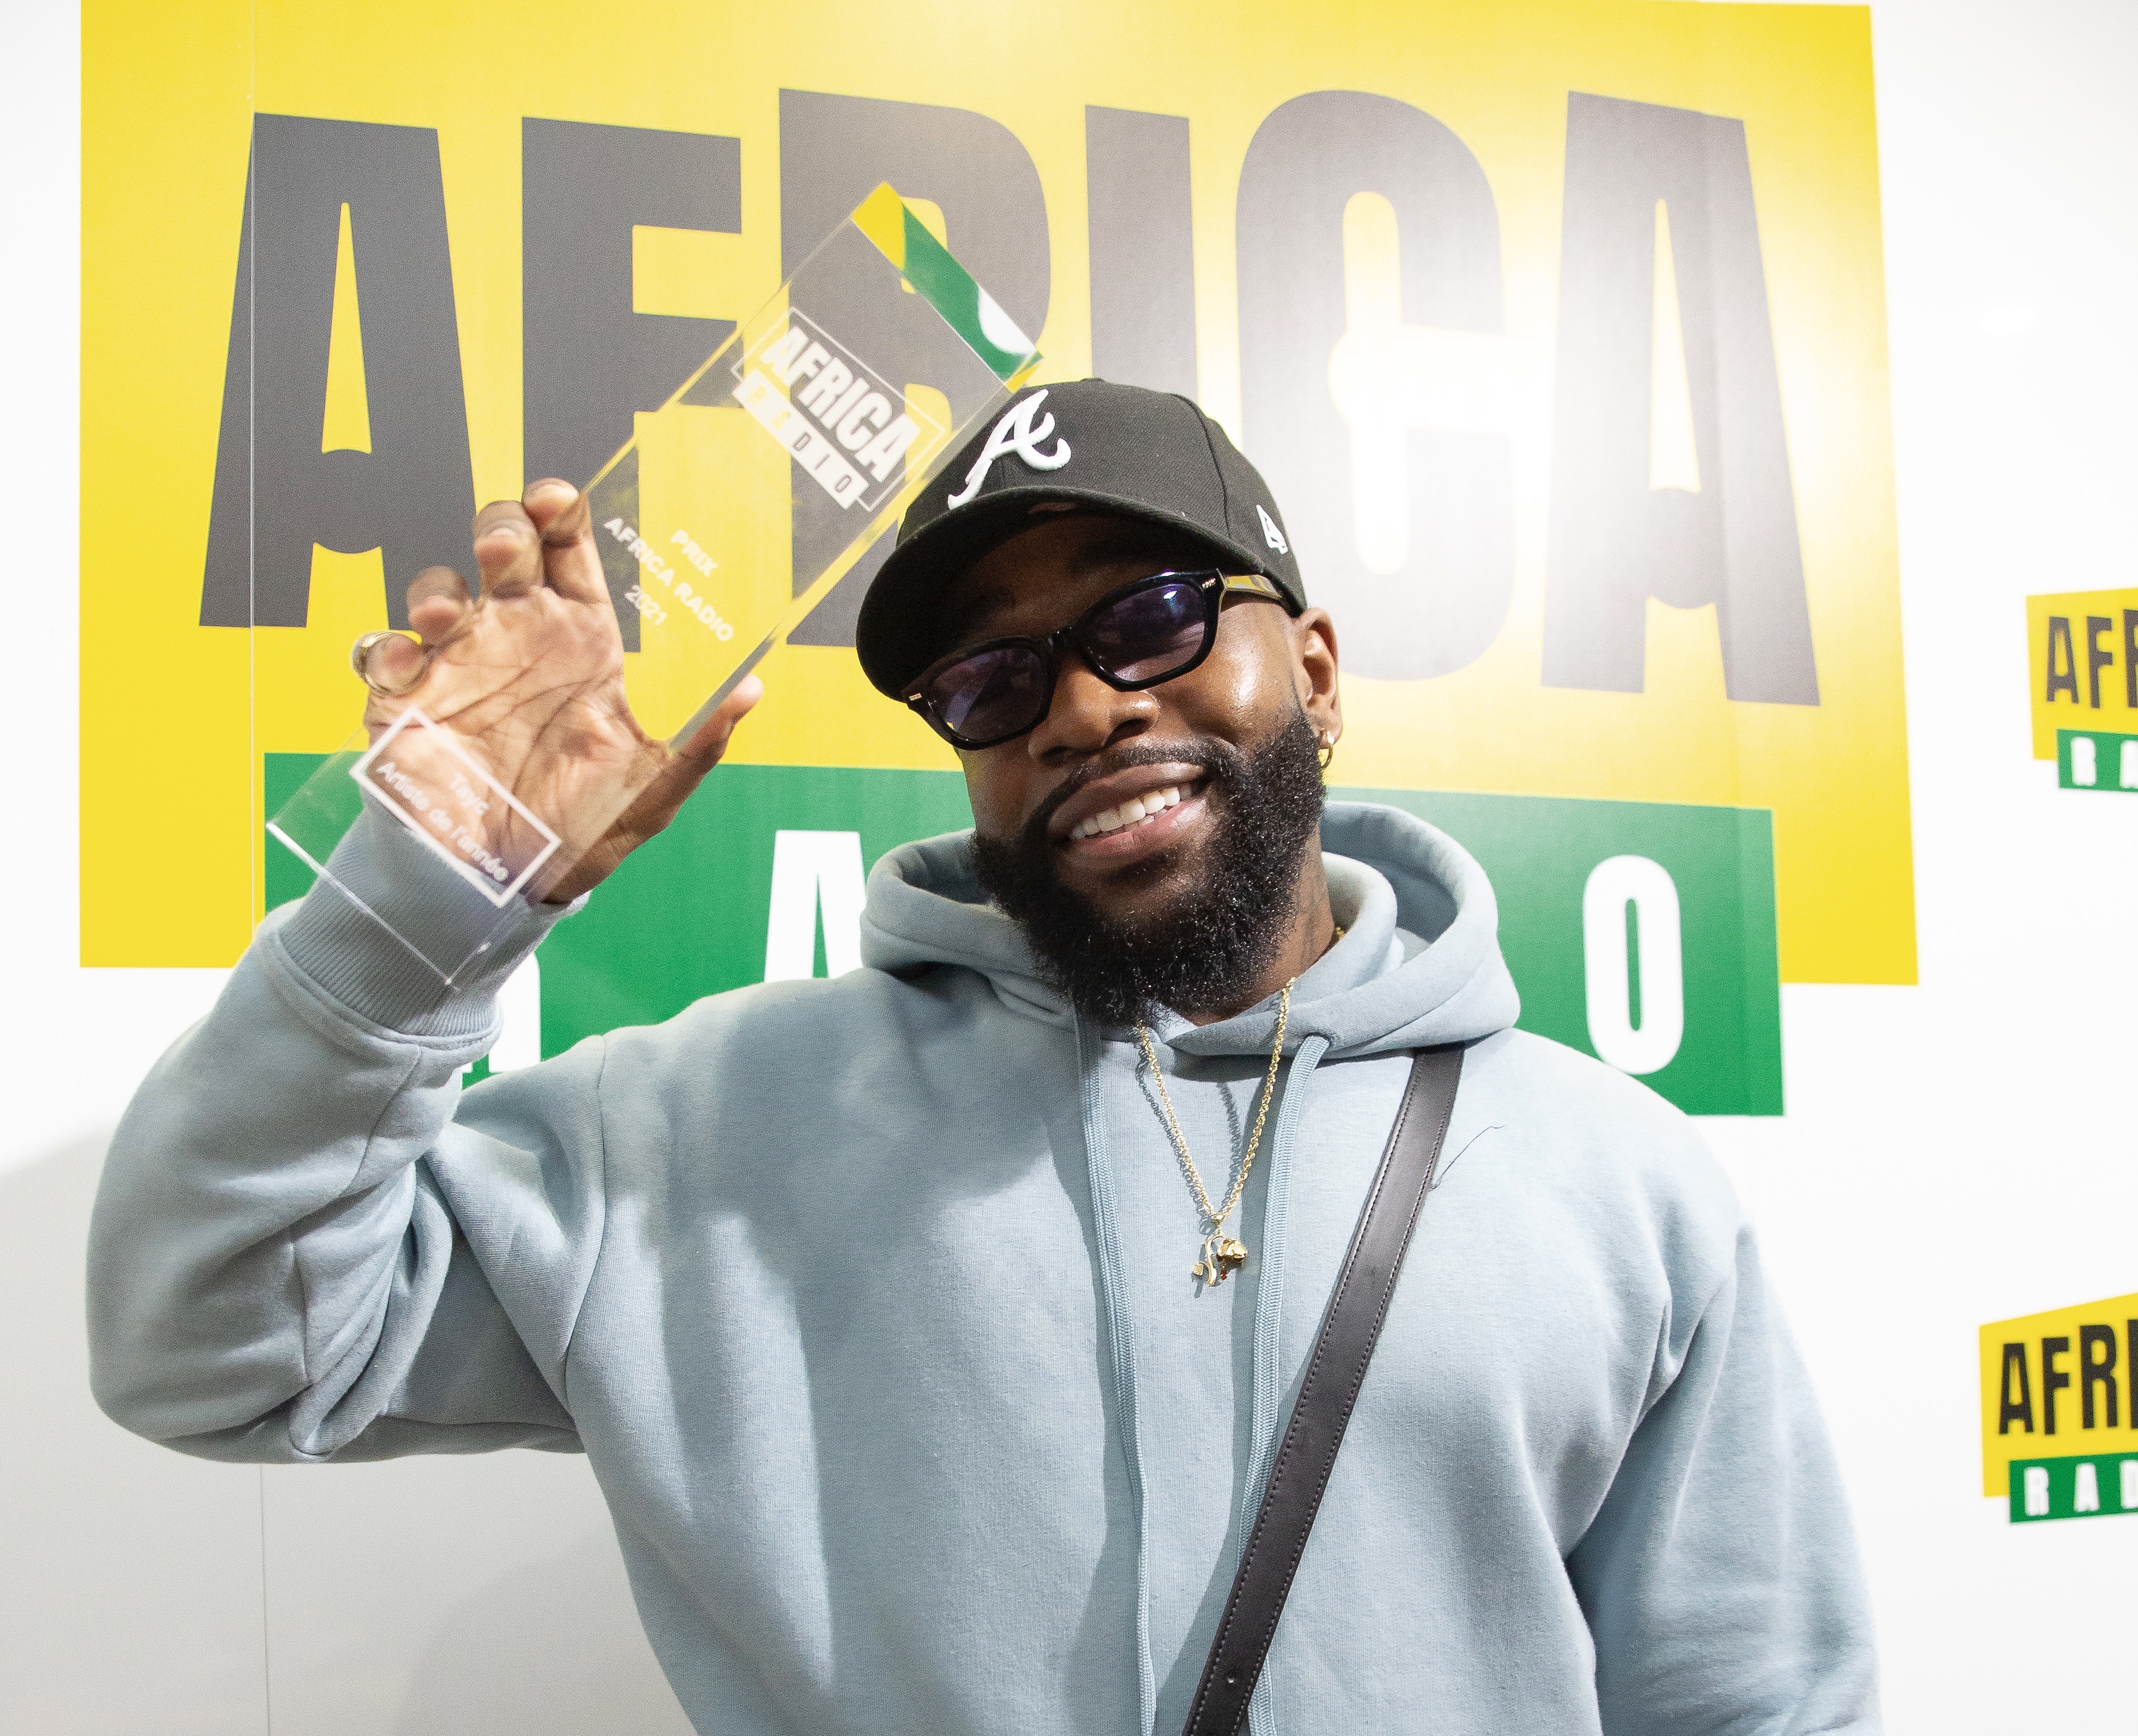 Africa Radio décerne le prix "Artiste de l’année"